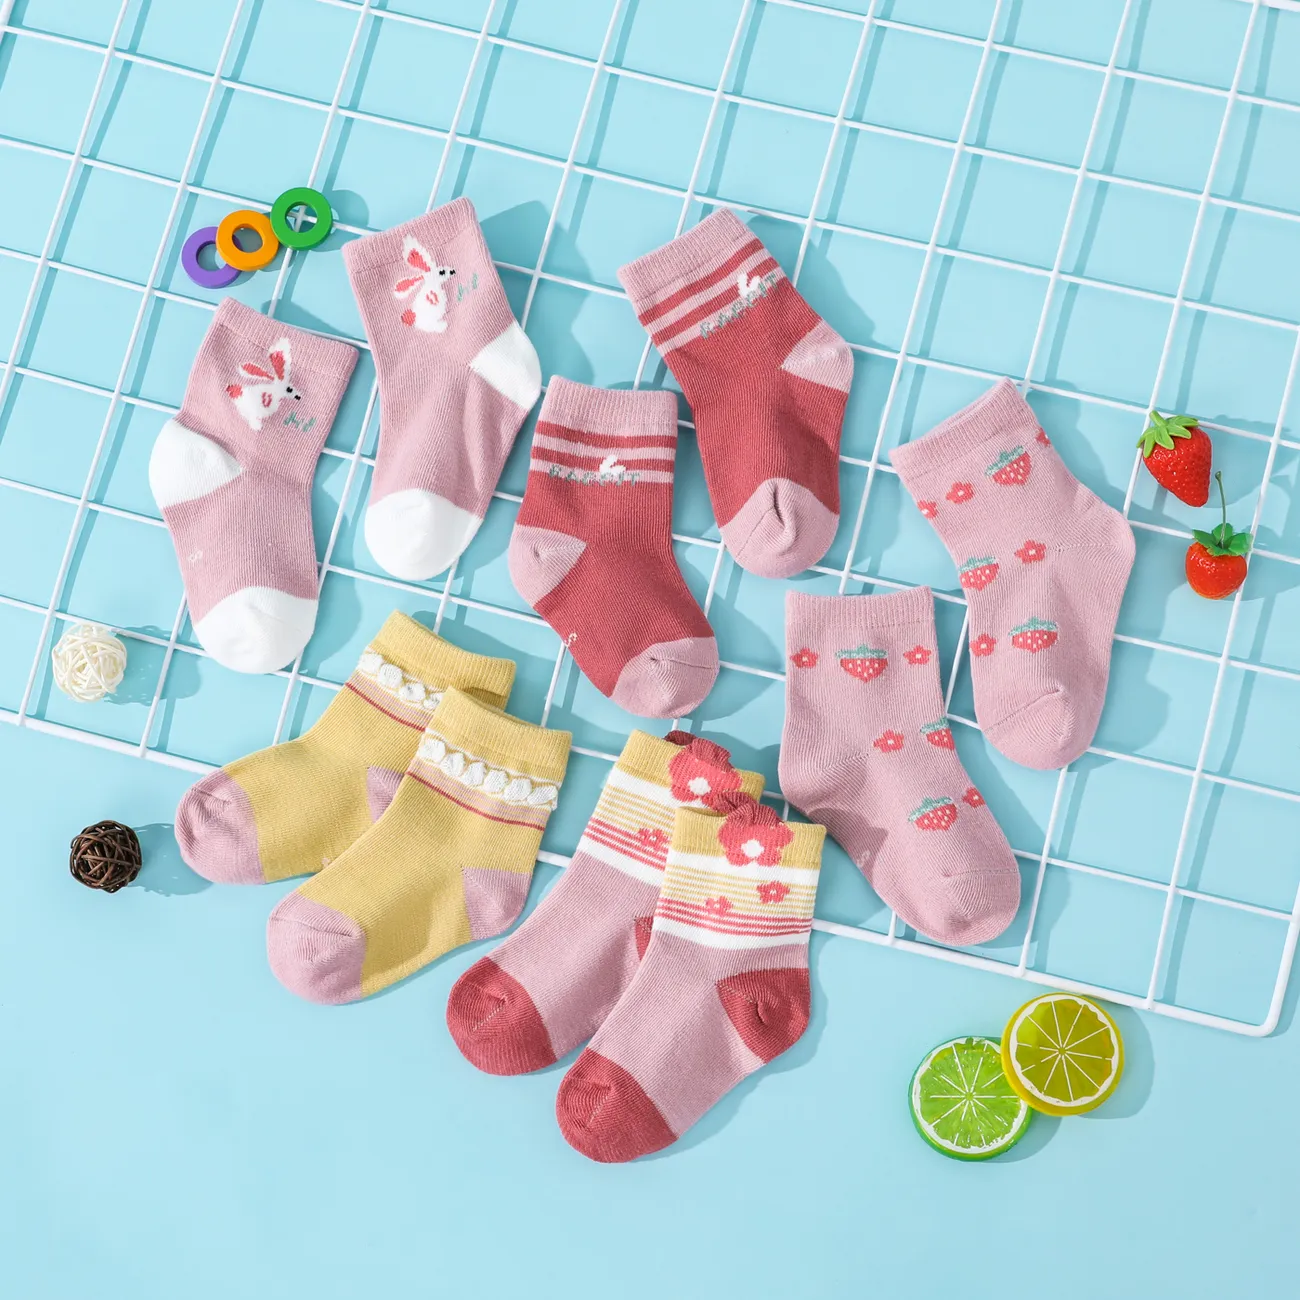 嬰兒/蹣跚學步/兒童 5 件裝男孩和女孩卡通印花襪子 粉色 big image 1